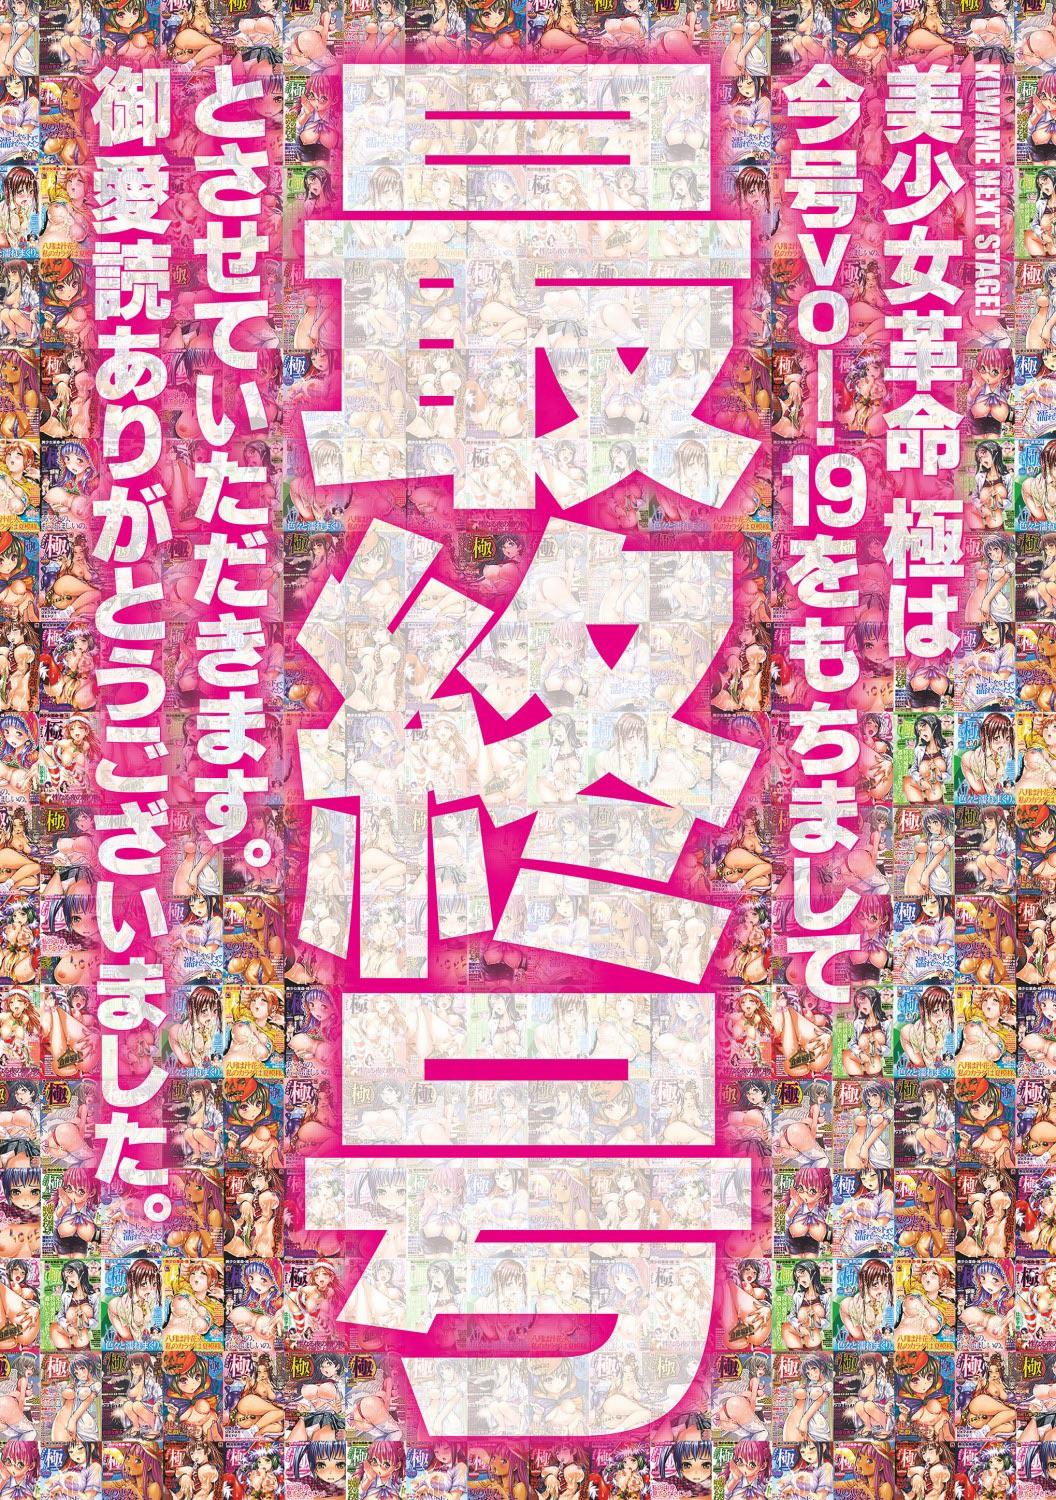 Bishoujo Kakumei KIWAME 2012-04 Vol.19 2